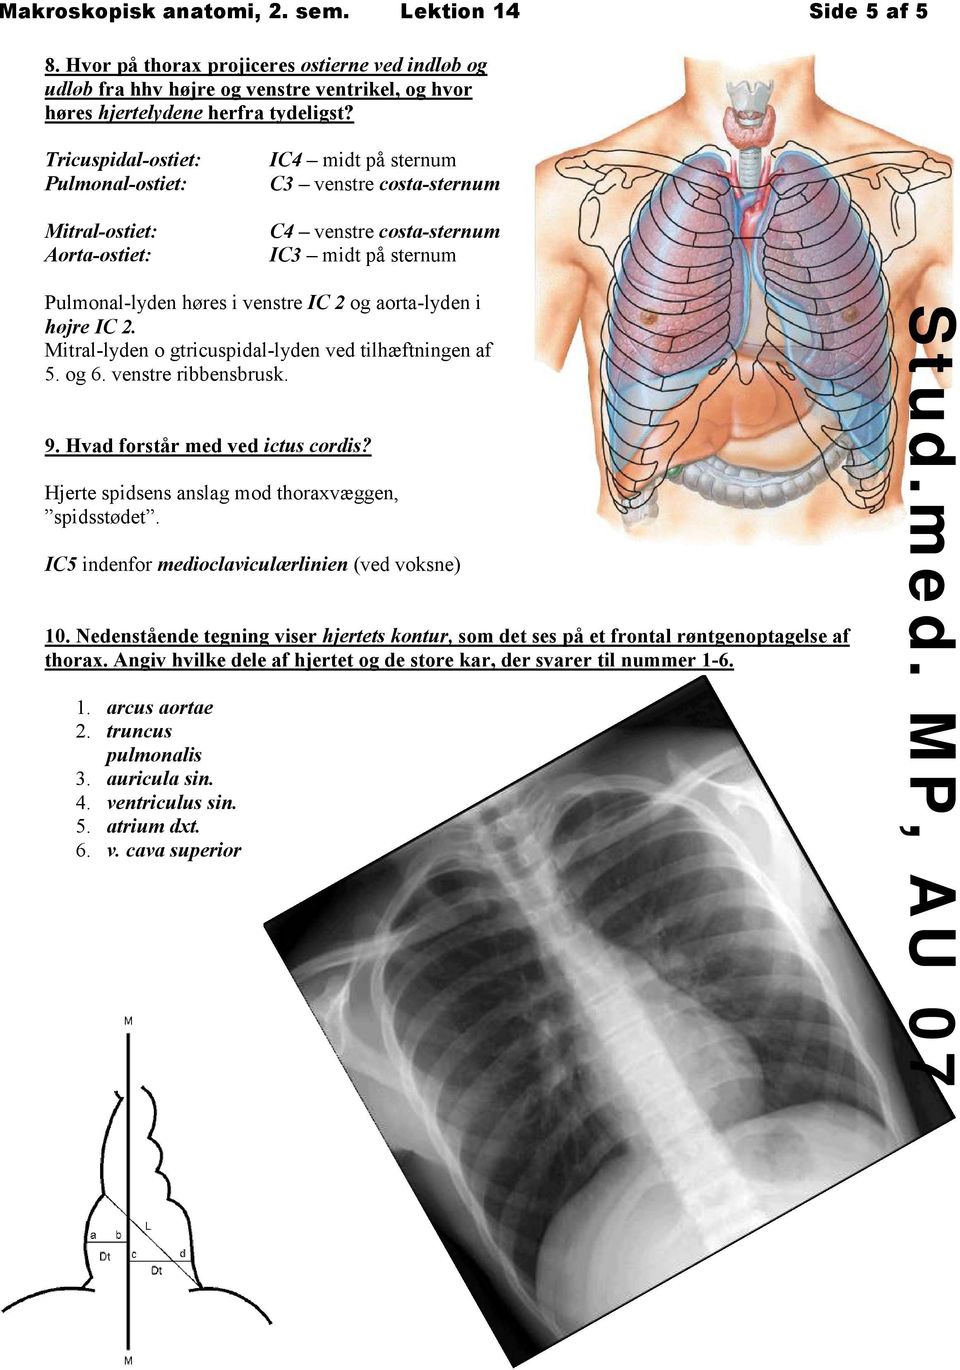 aorta-lyden i højre IC 2. Mitral-lyden o gtricuspidal-lyden ved tilhæftningen af 5. og 6. venstre ribbensbrusk. 9. Hvad forstår med ved ictus cordis?